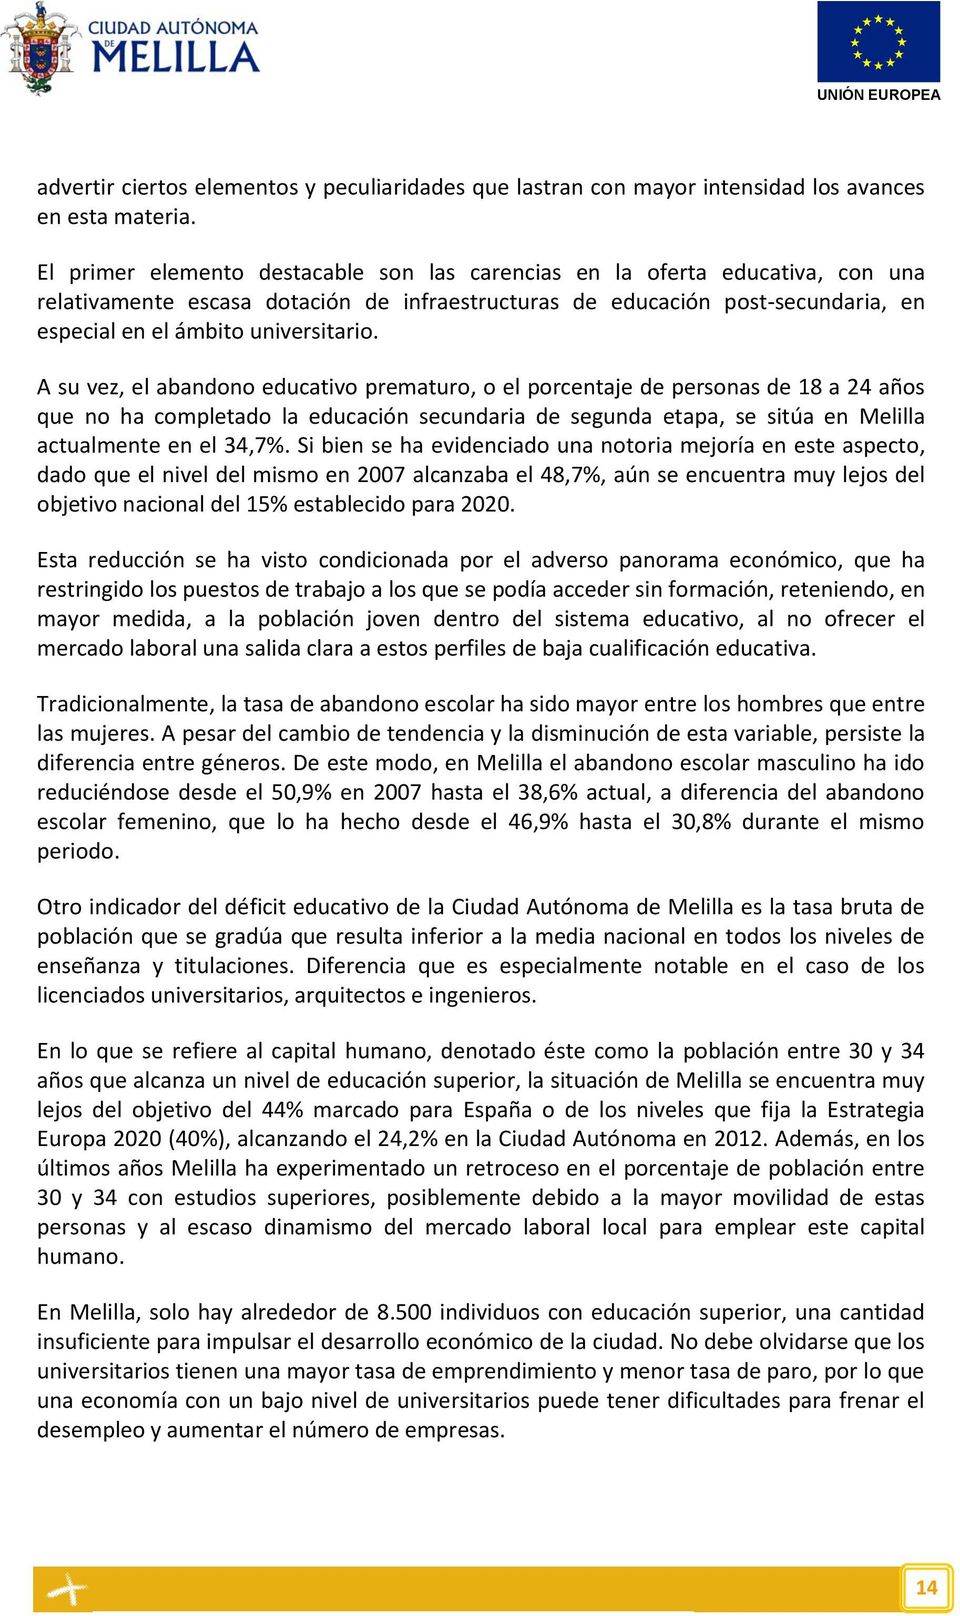 A su vez, el abandono educativo prematuro, o el porcentaje de personas de 18 a 24 años que no ha completado la educación secundaria de segunda etapa, se sitúa en Melilla actualmente en el 34,7%.